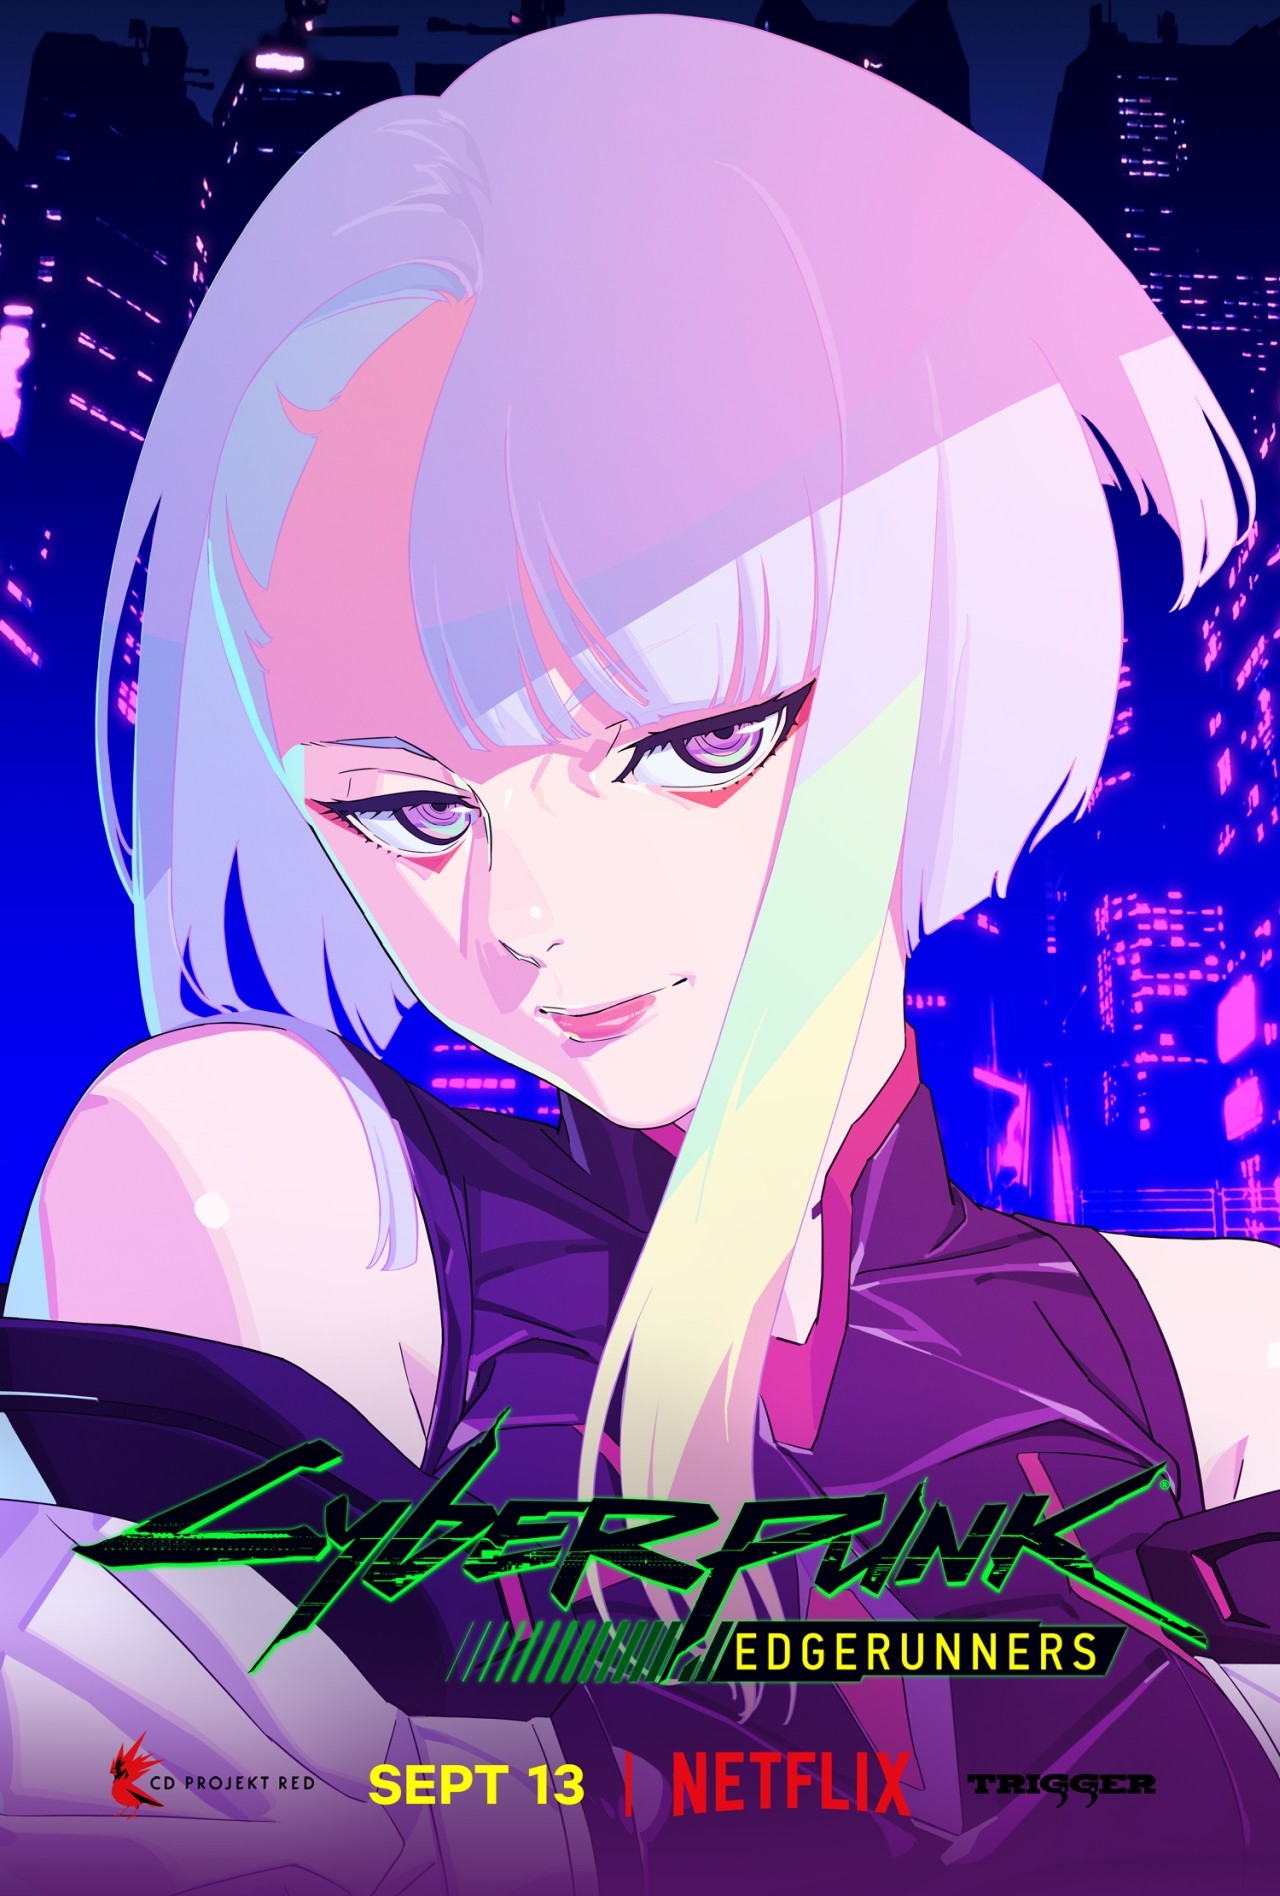 Cyberpunk: Edgerunners, Cyberpunk 2077, CD Projekt RED, trigger, anime,  anime girls, STUDIO MASSKET, Netflix TV Series, 4K